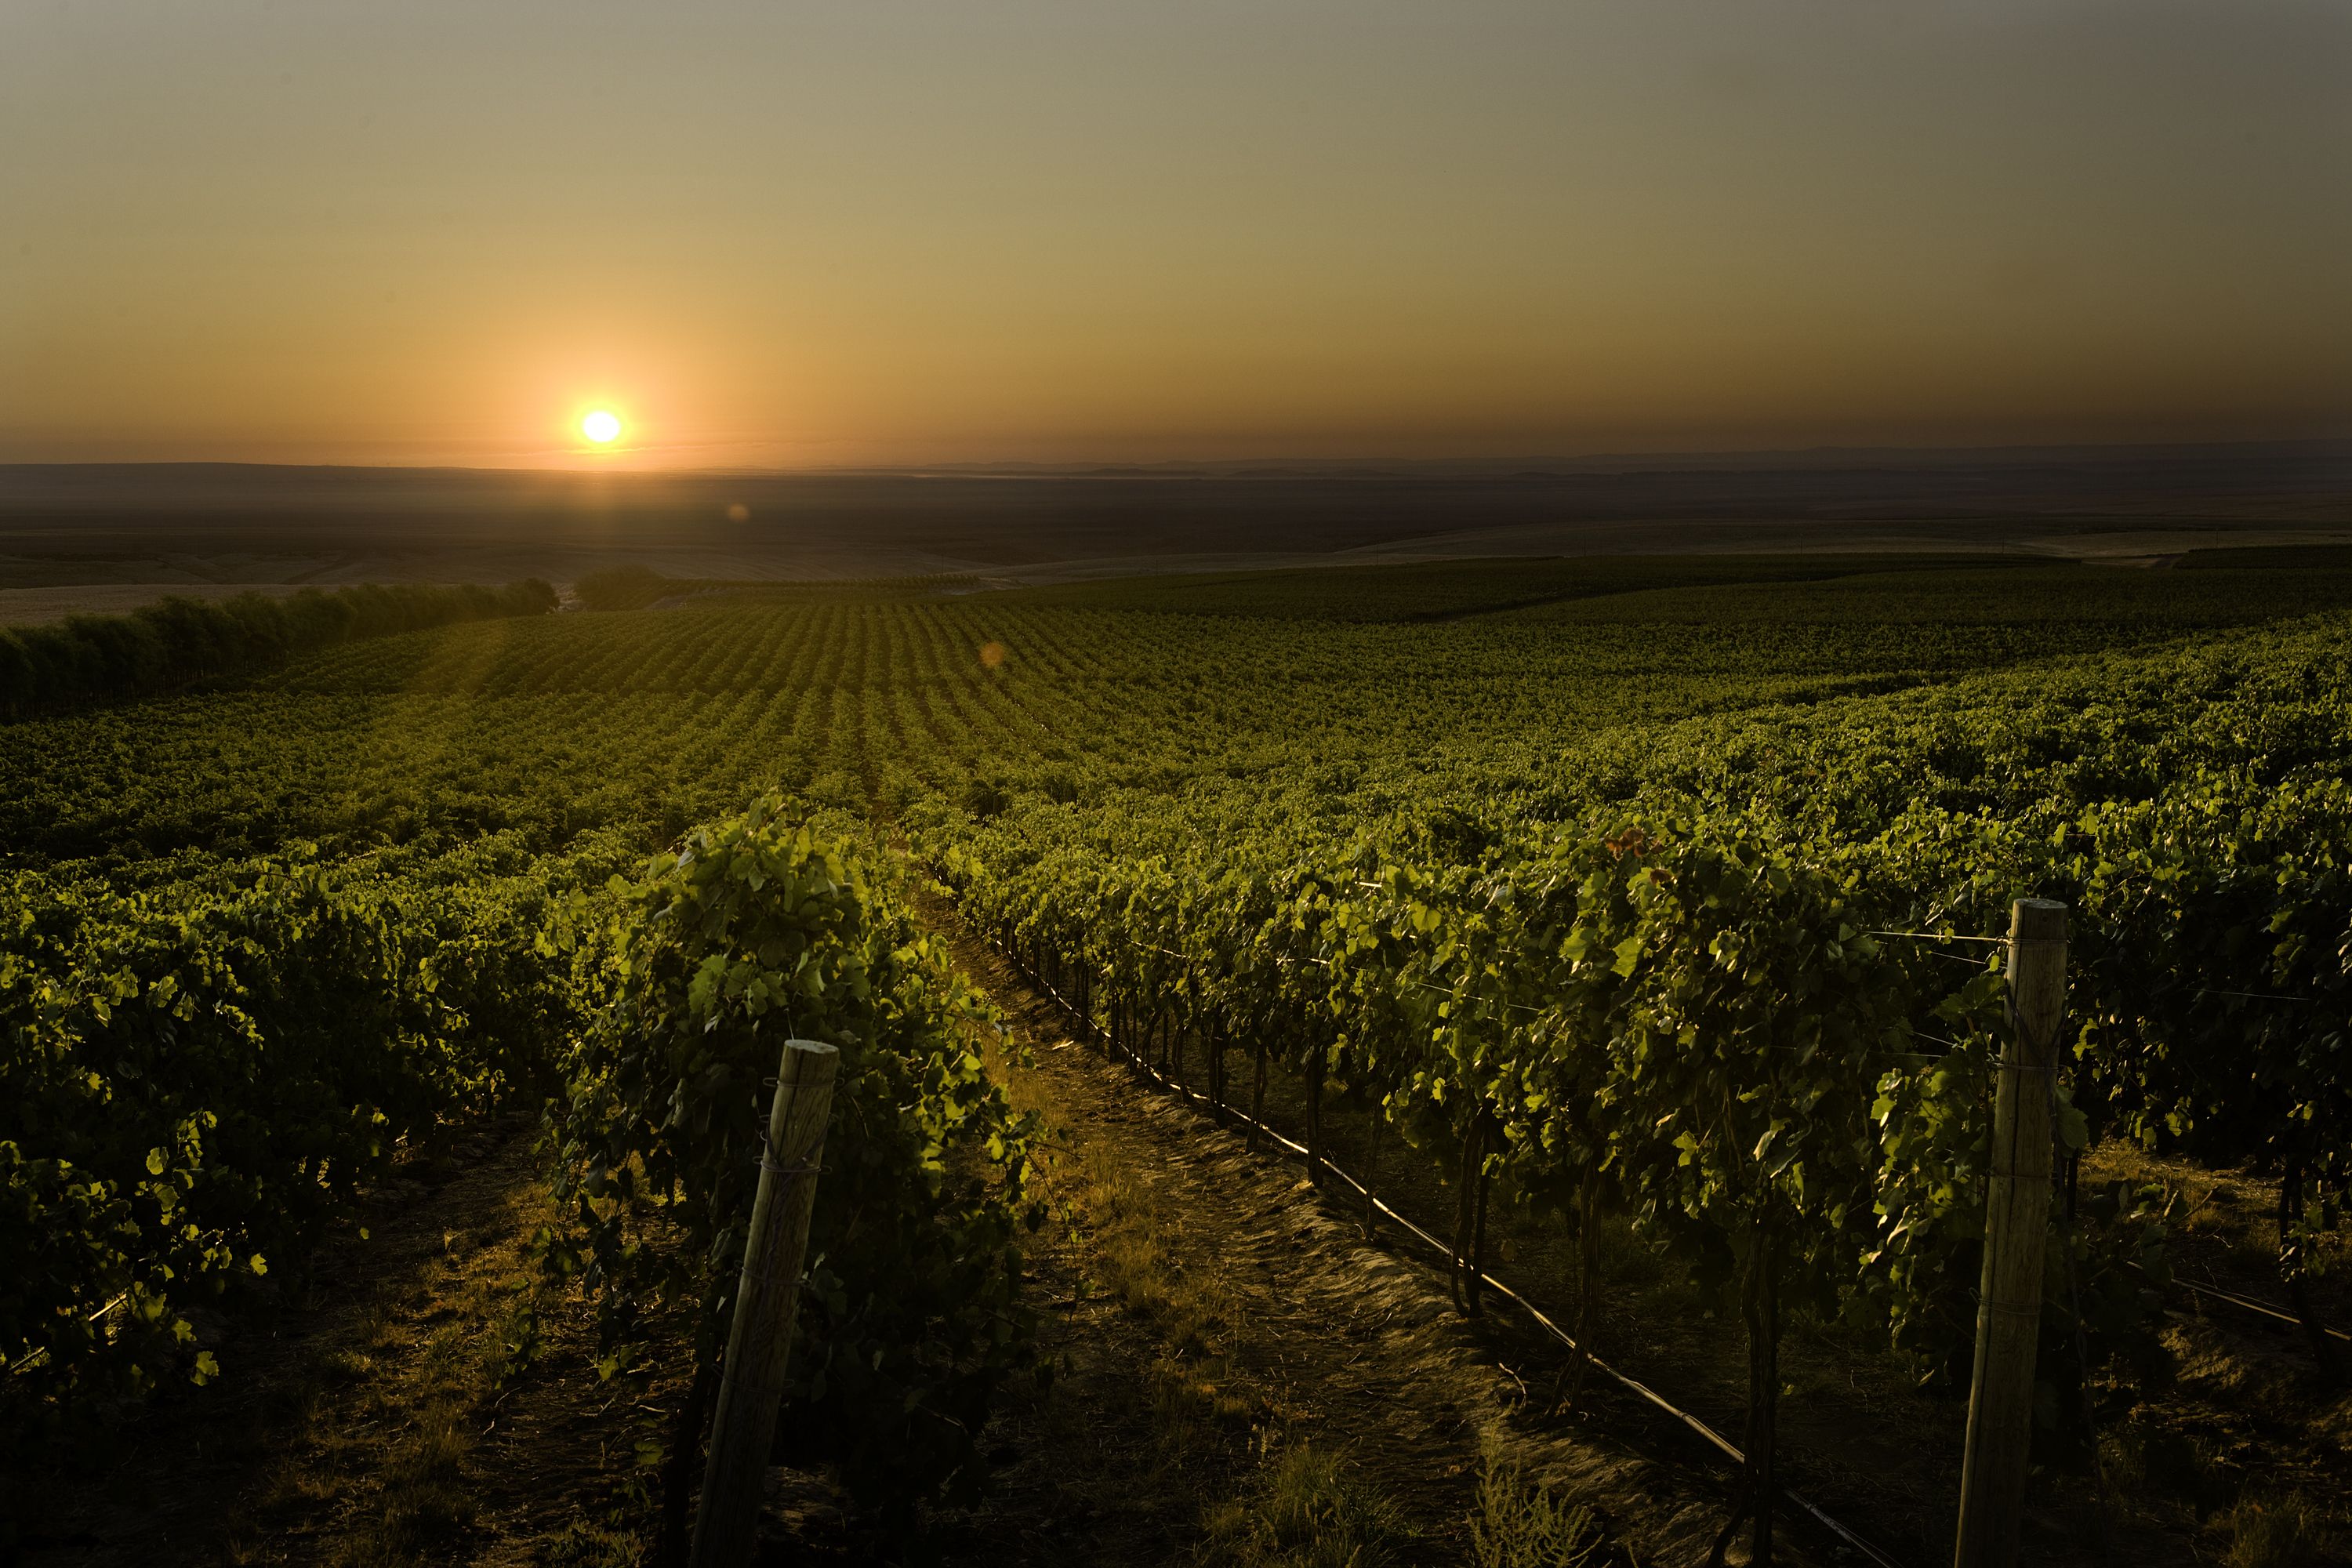 На фотографии показаны виноградные поля на закате дня